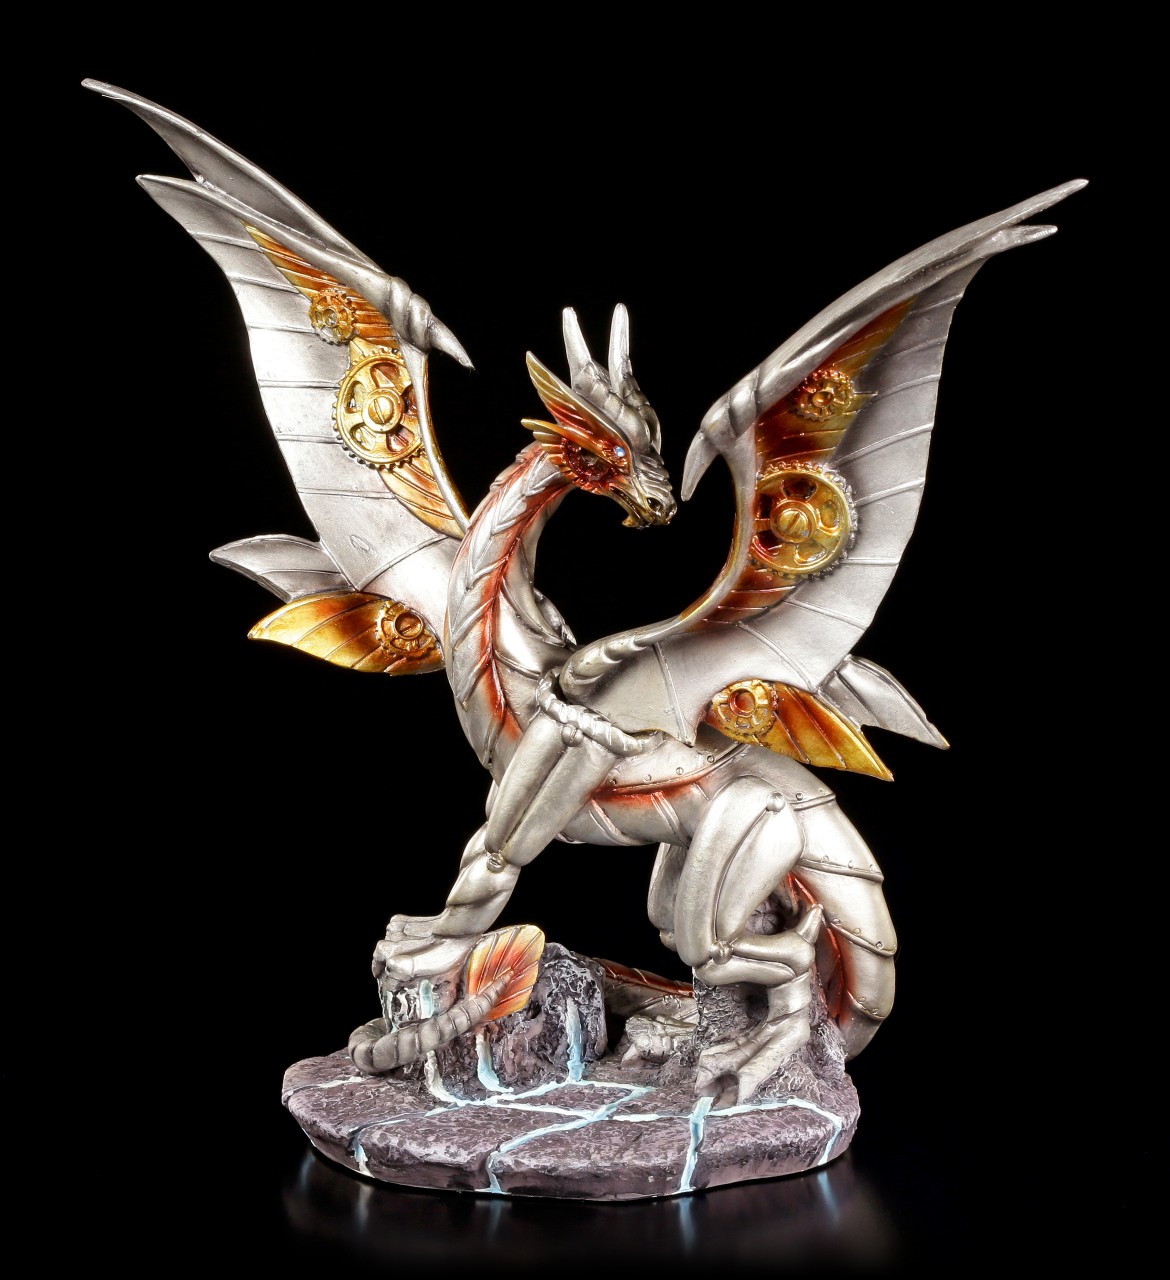 Deko Figur Steampunk Halloween Gothic Dekoration Drachenfigur Fantasy Dragon Art